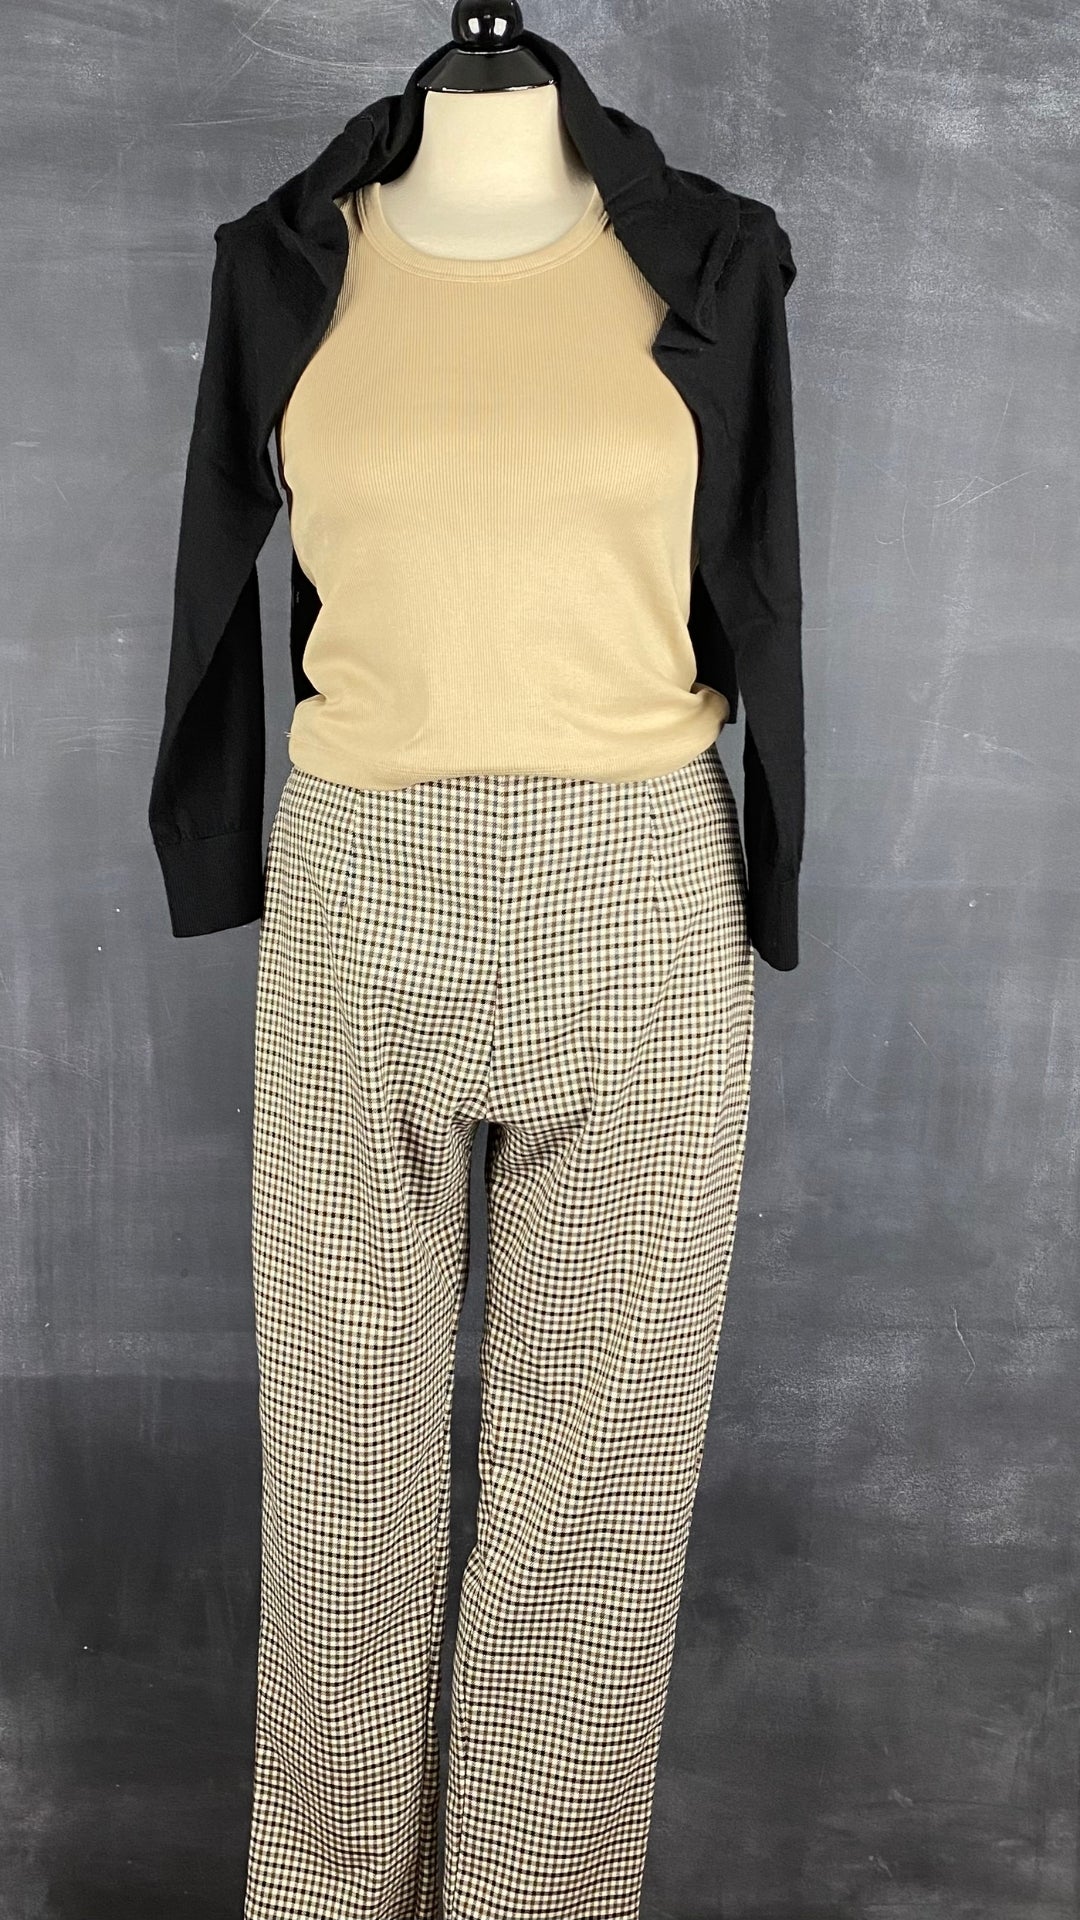 Pantalon pied de poule automnal, marque Essentiels Co Mtl, taille medium (petit). Vue d'un agencement avec une camisole côtelée beige de base et un tricot classique noir en laine de mérinos.